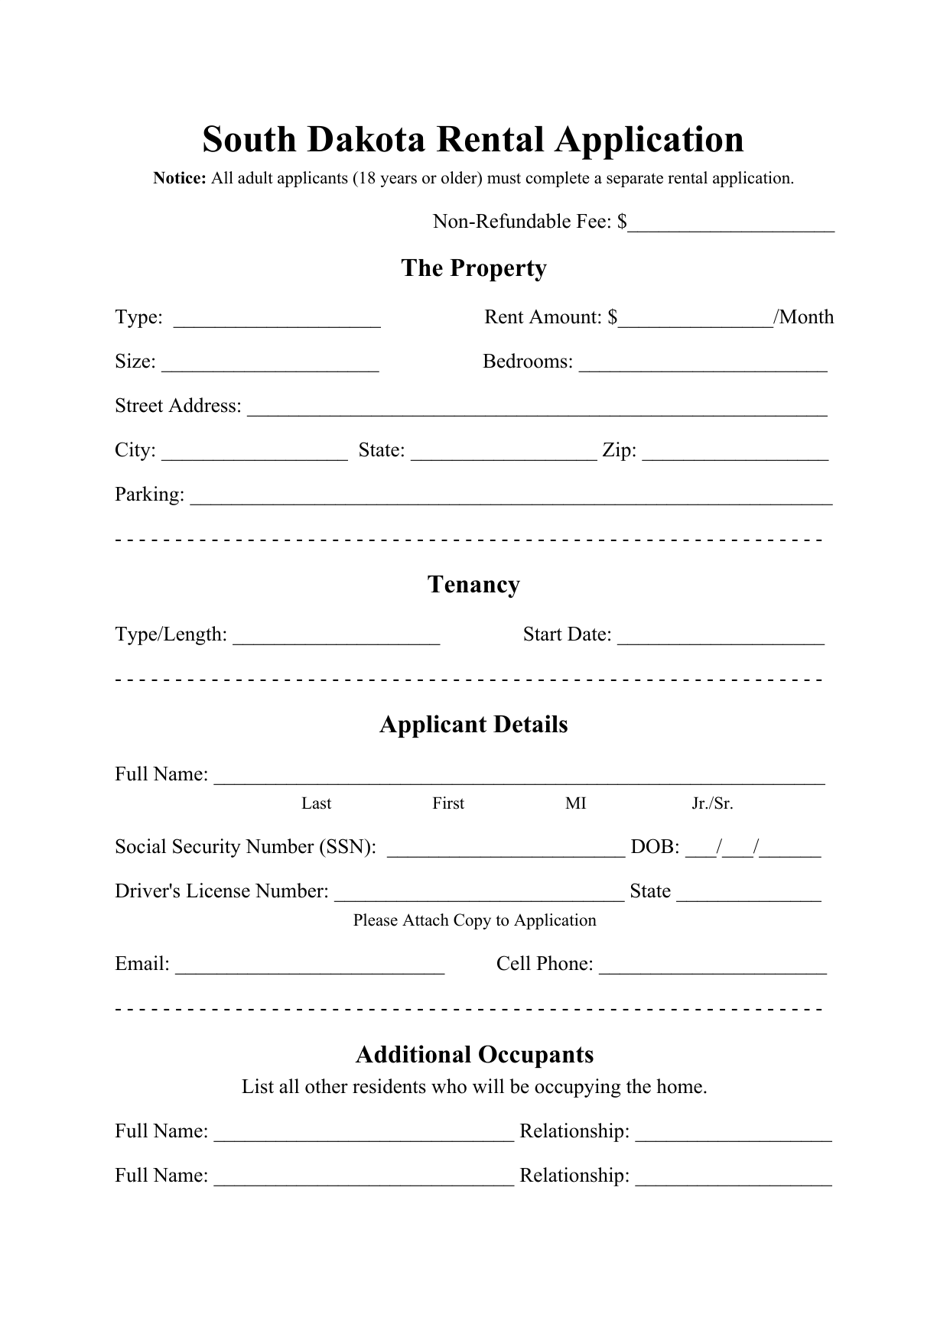 Rental Application Form - South Dakota, Page 1